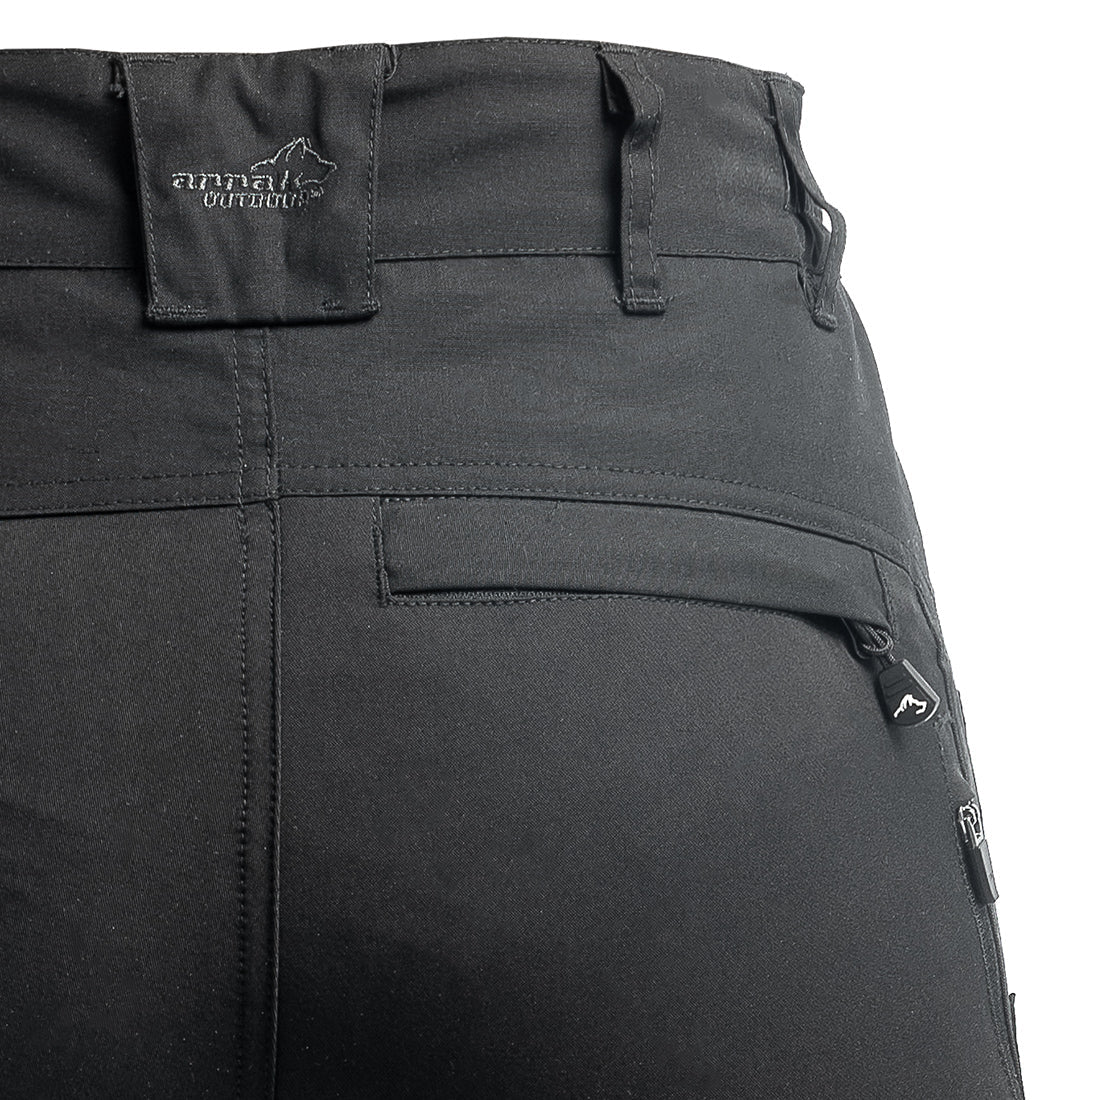 Arrak Ladies Active Stretch Pants - Black – DogSport Gear